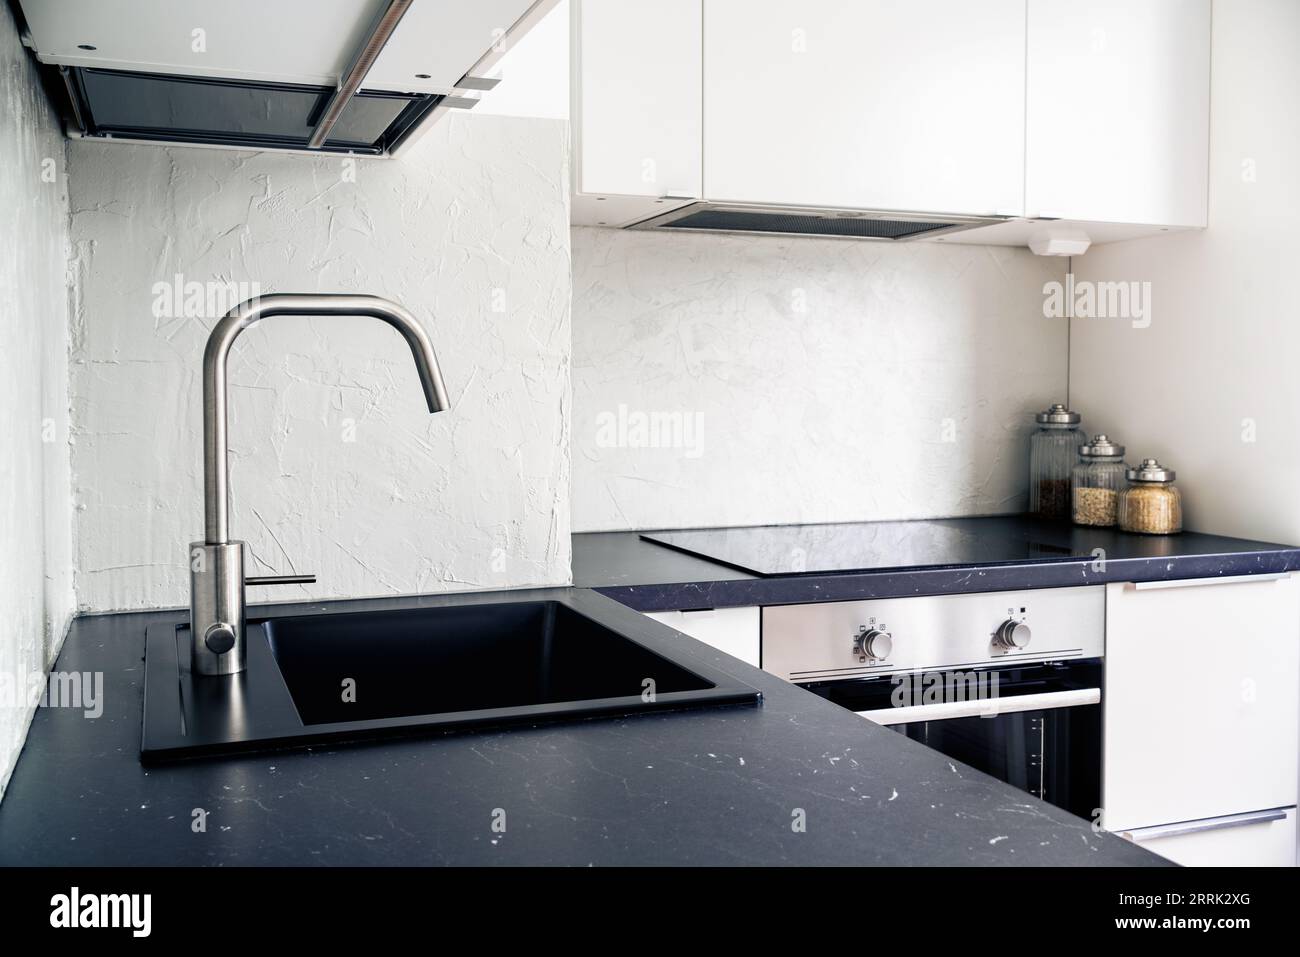 Küchenarbeitsplatte, Wasserhahn, Wasserhahn und Waschbecken. Weiß und schwarz skandinavisches Innendesign in modernen Apartments und Wohnungen. Induktionskochfeld. Stockfoto